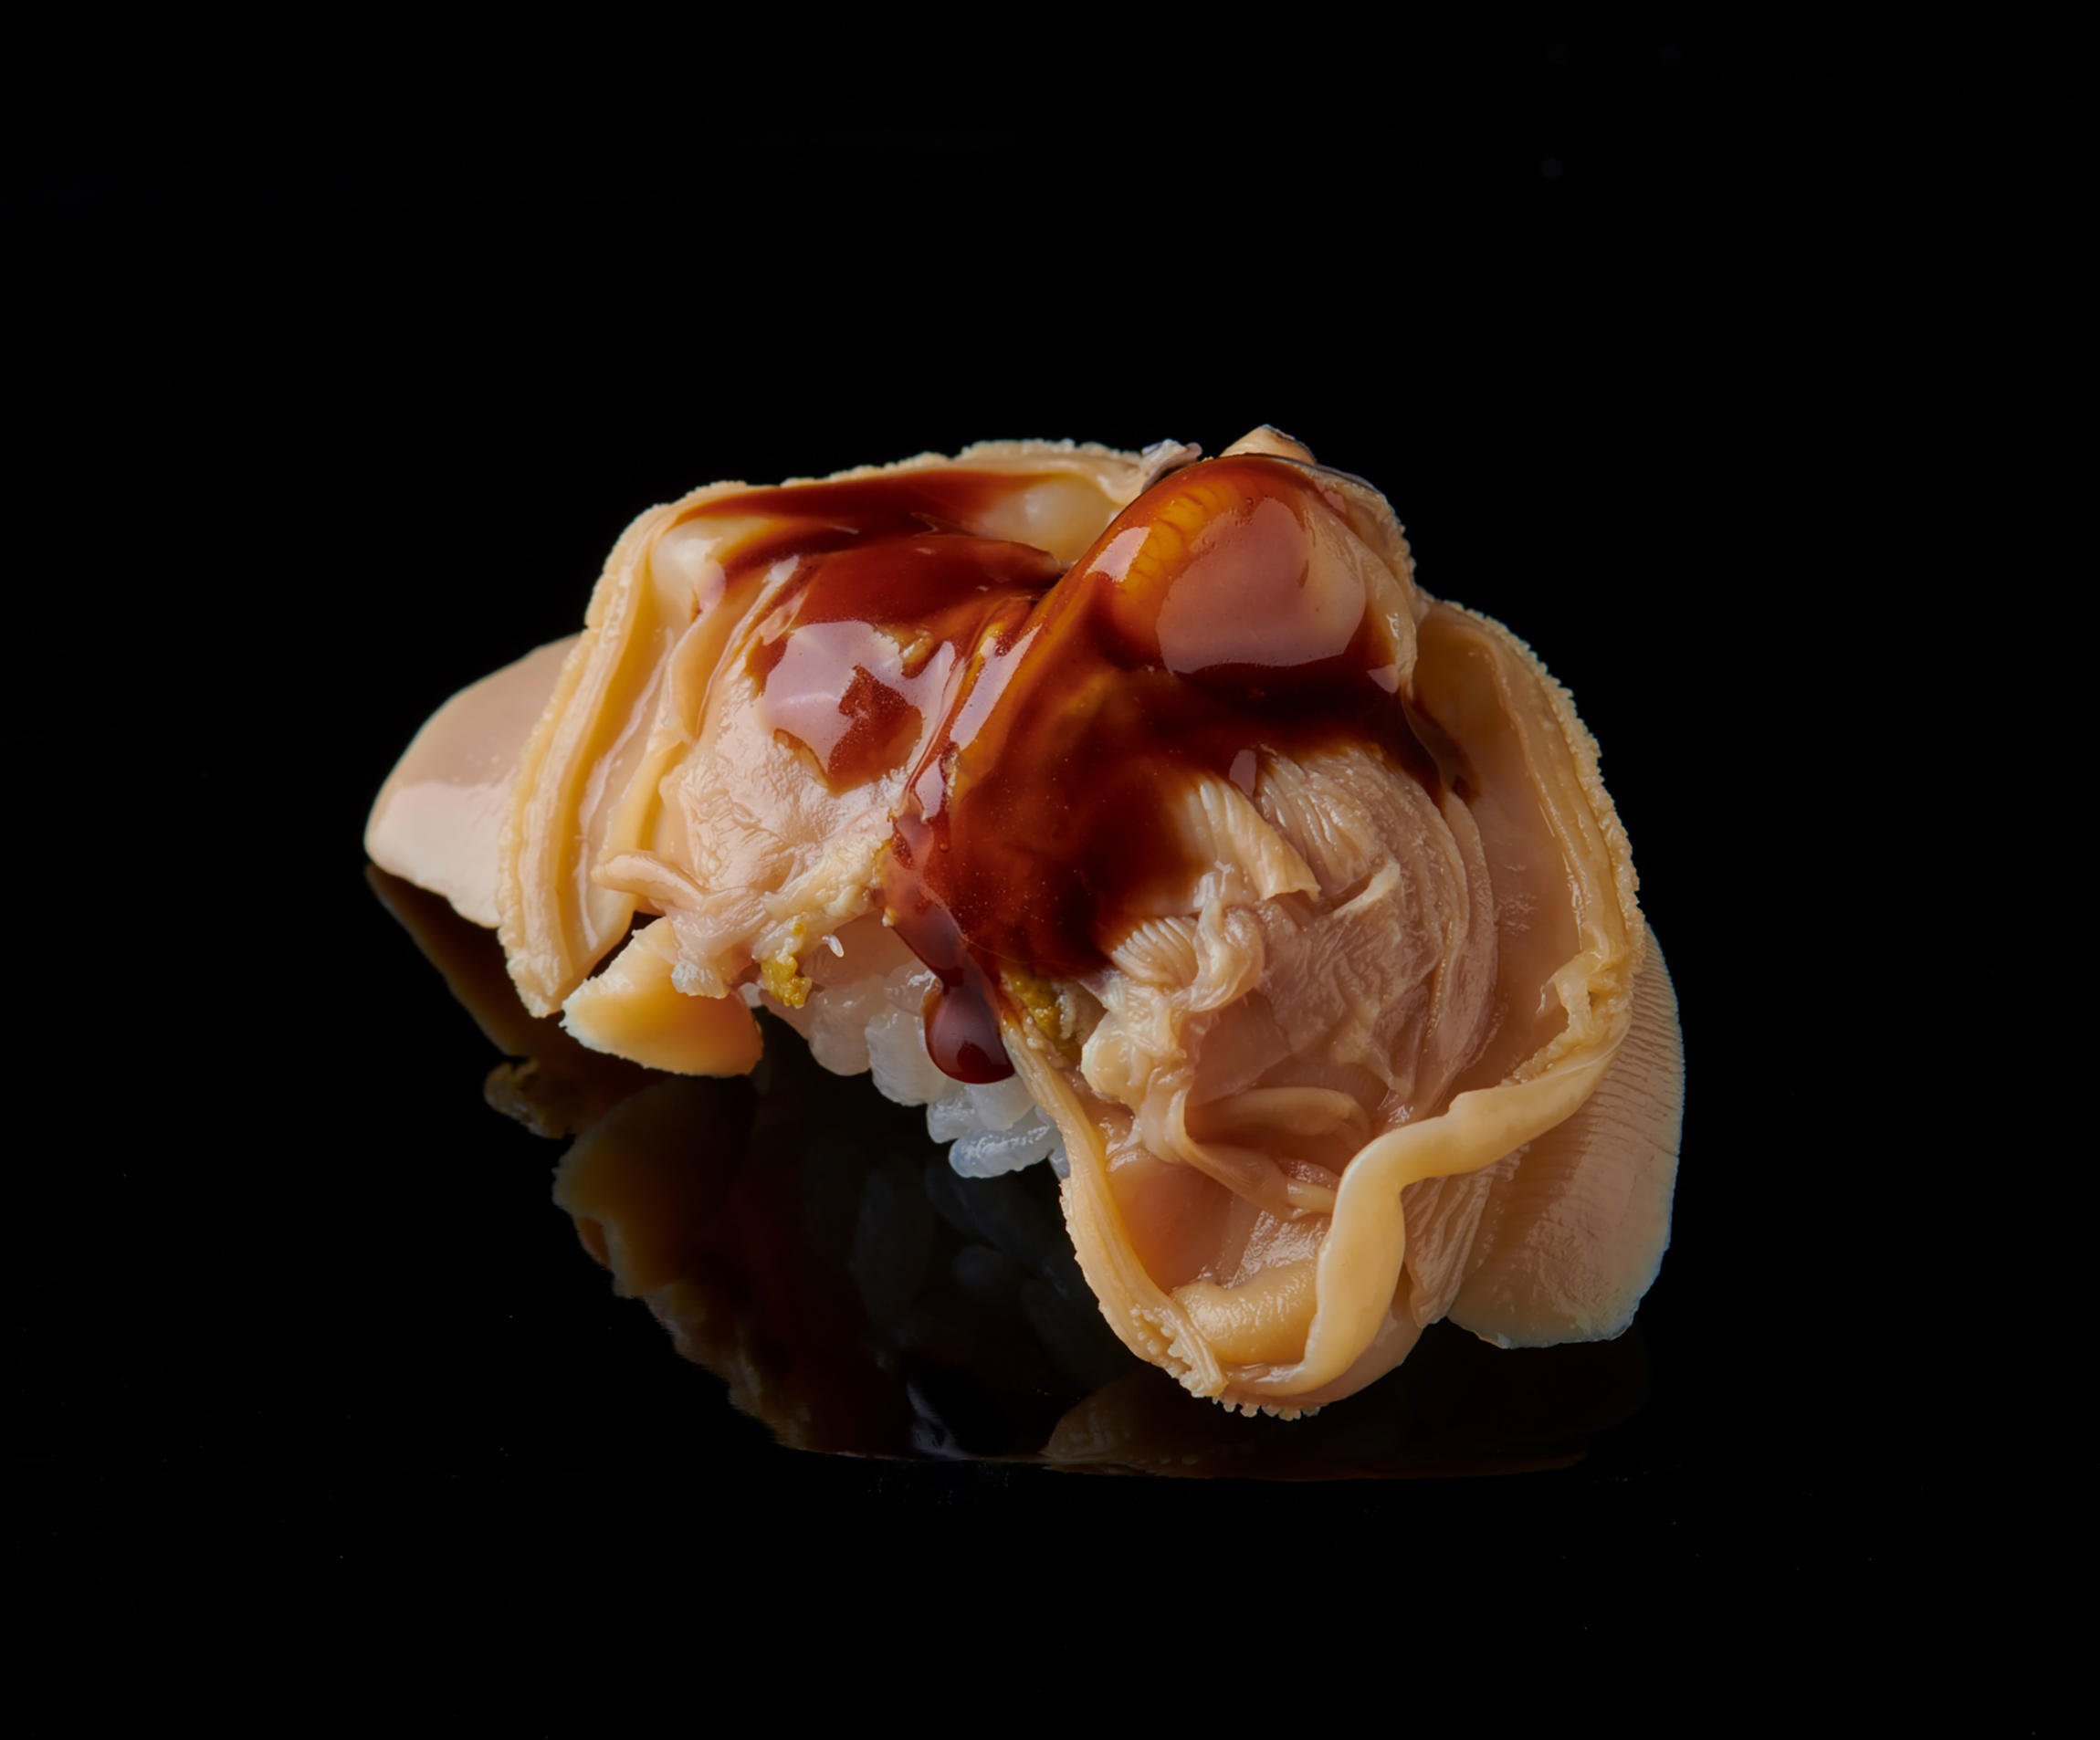 㐂寿司 の蛤が春の訪れを告げる 㐂寿司 の365日 公式 Dancyu ダンチュウ